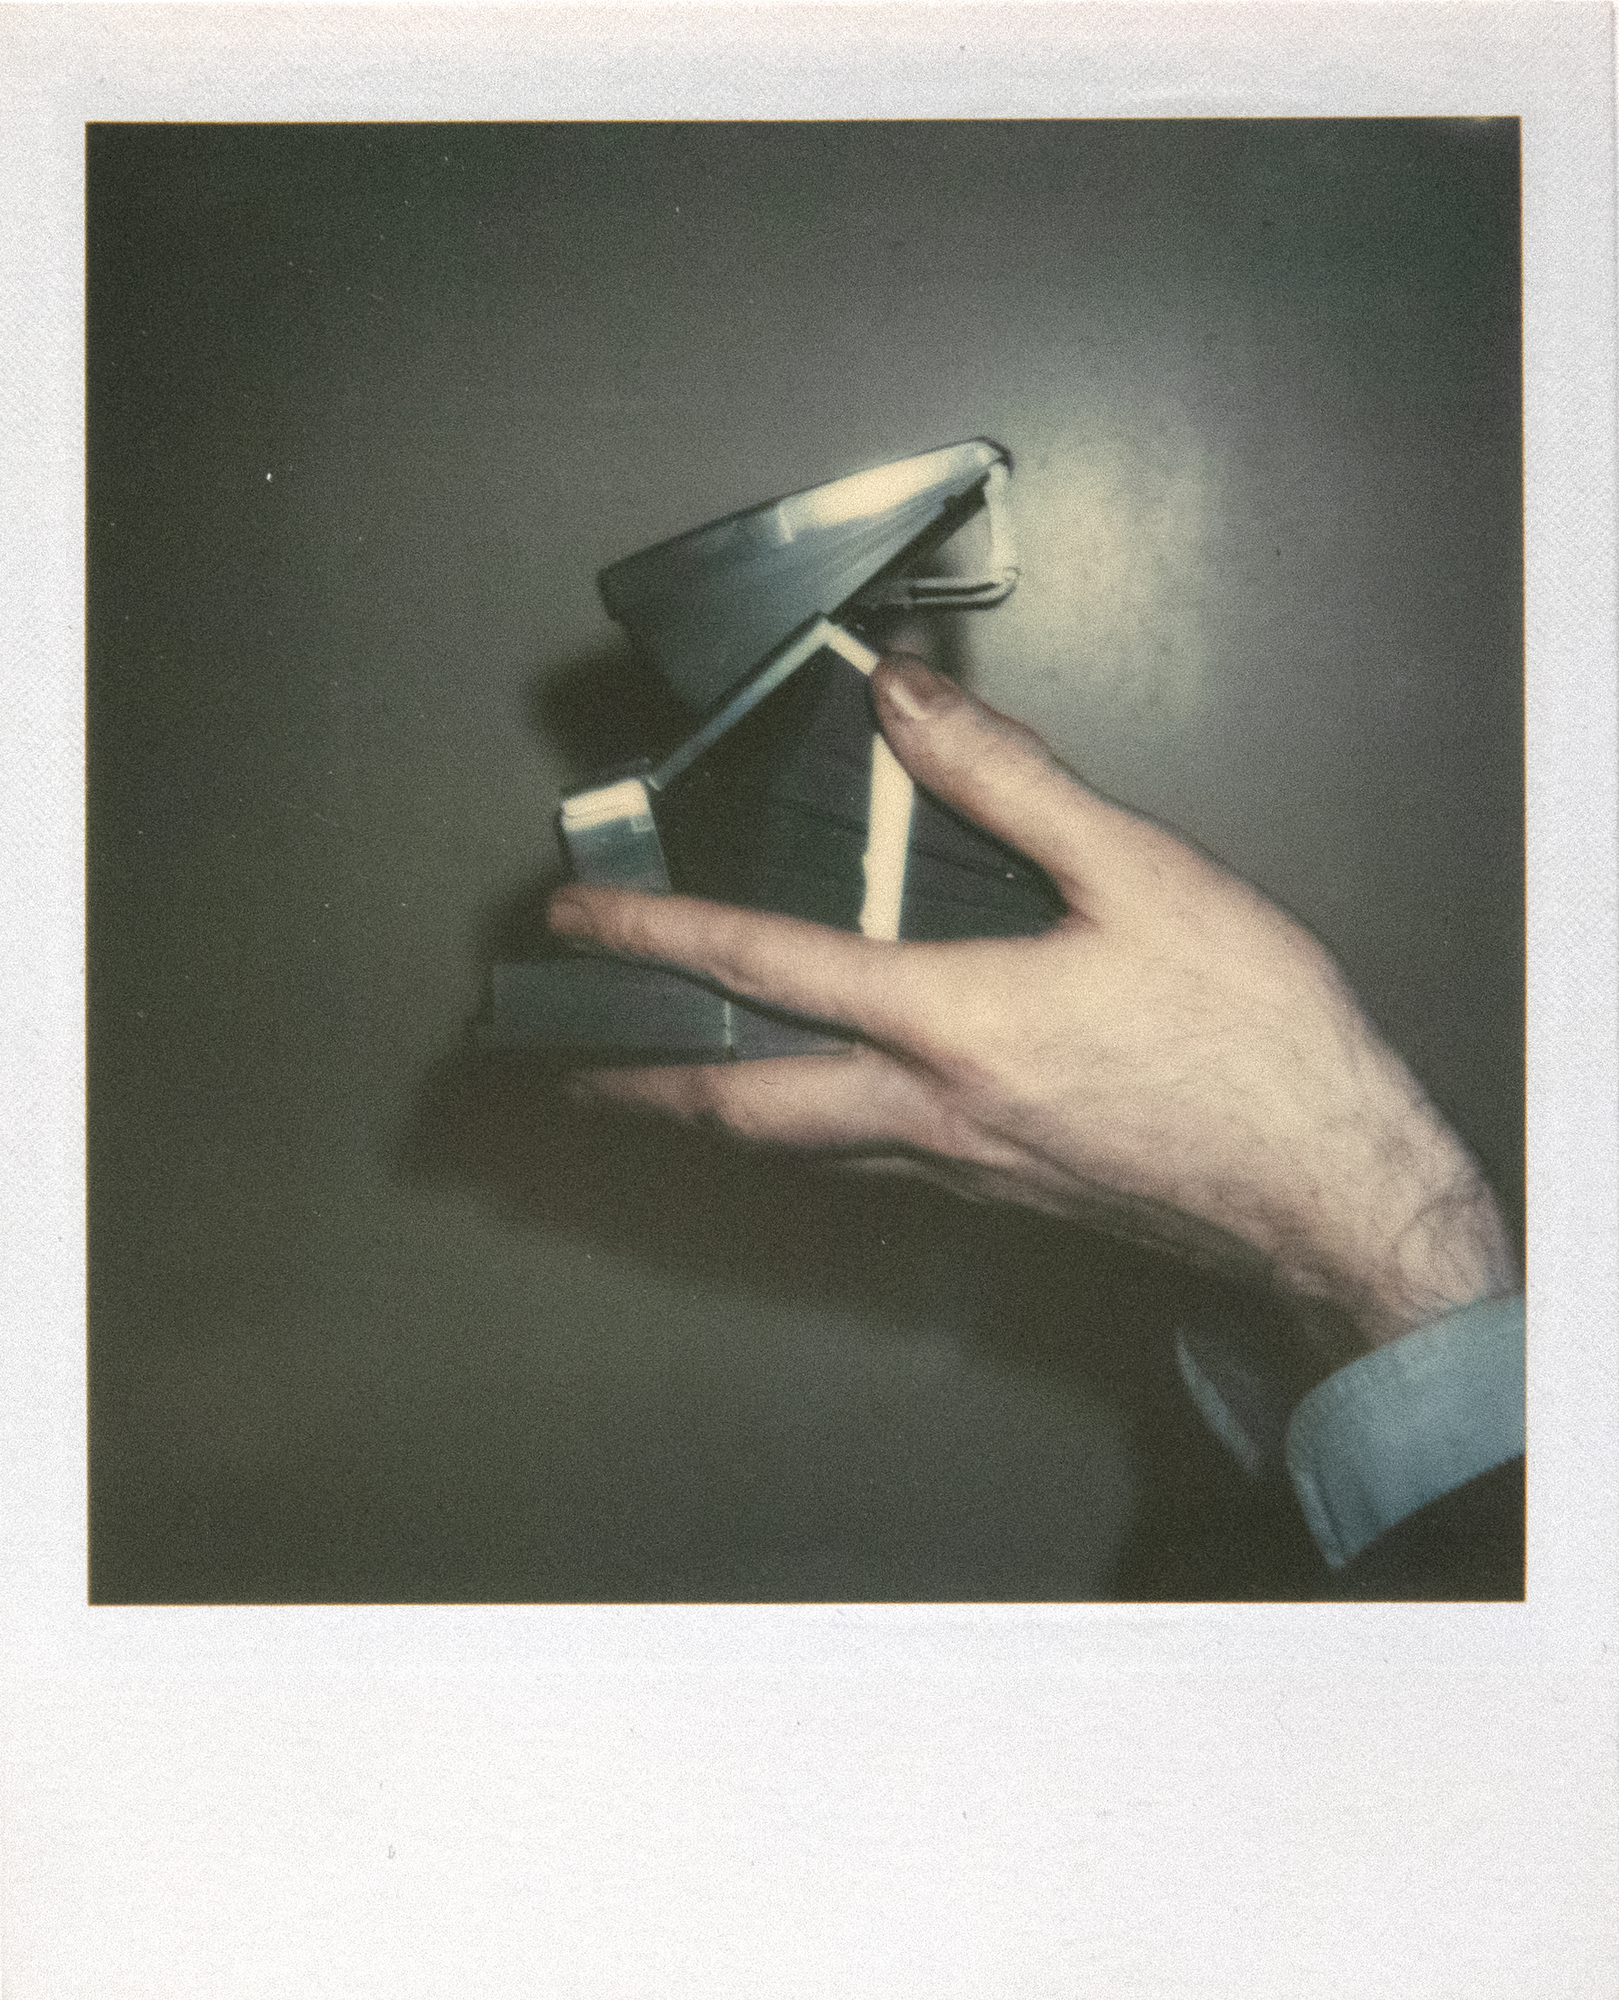 ANDY WARHOL - Autorretrato con cámara (díptico) - Polaroid, Polacolor - 4 1/4 x 3 3/8 in. ea.